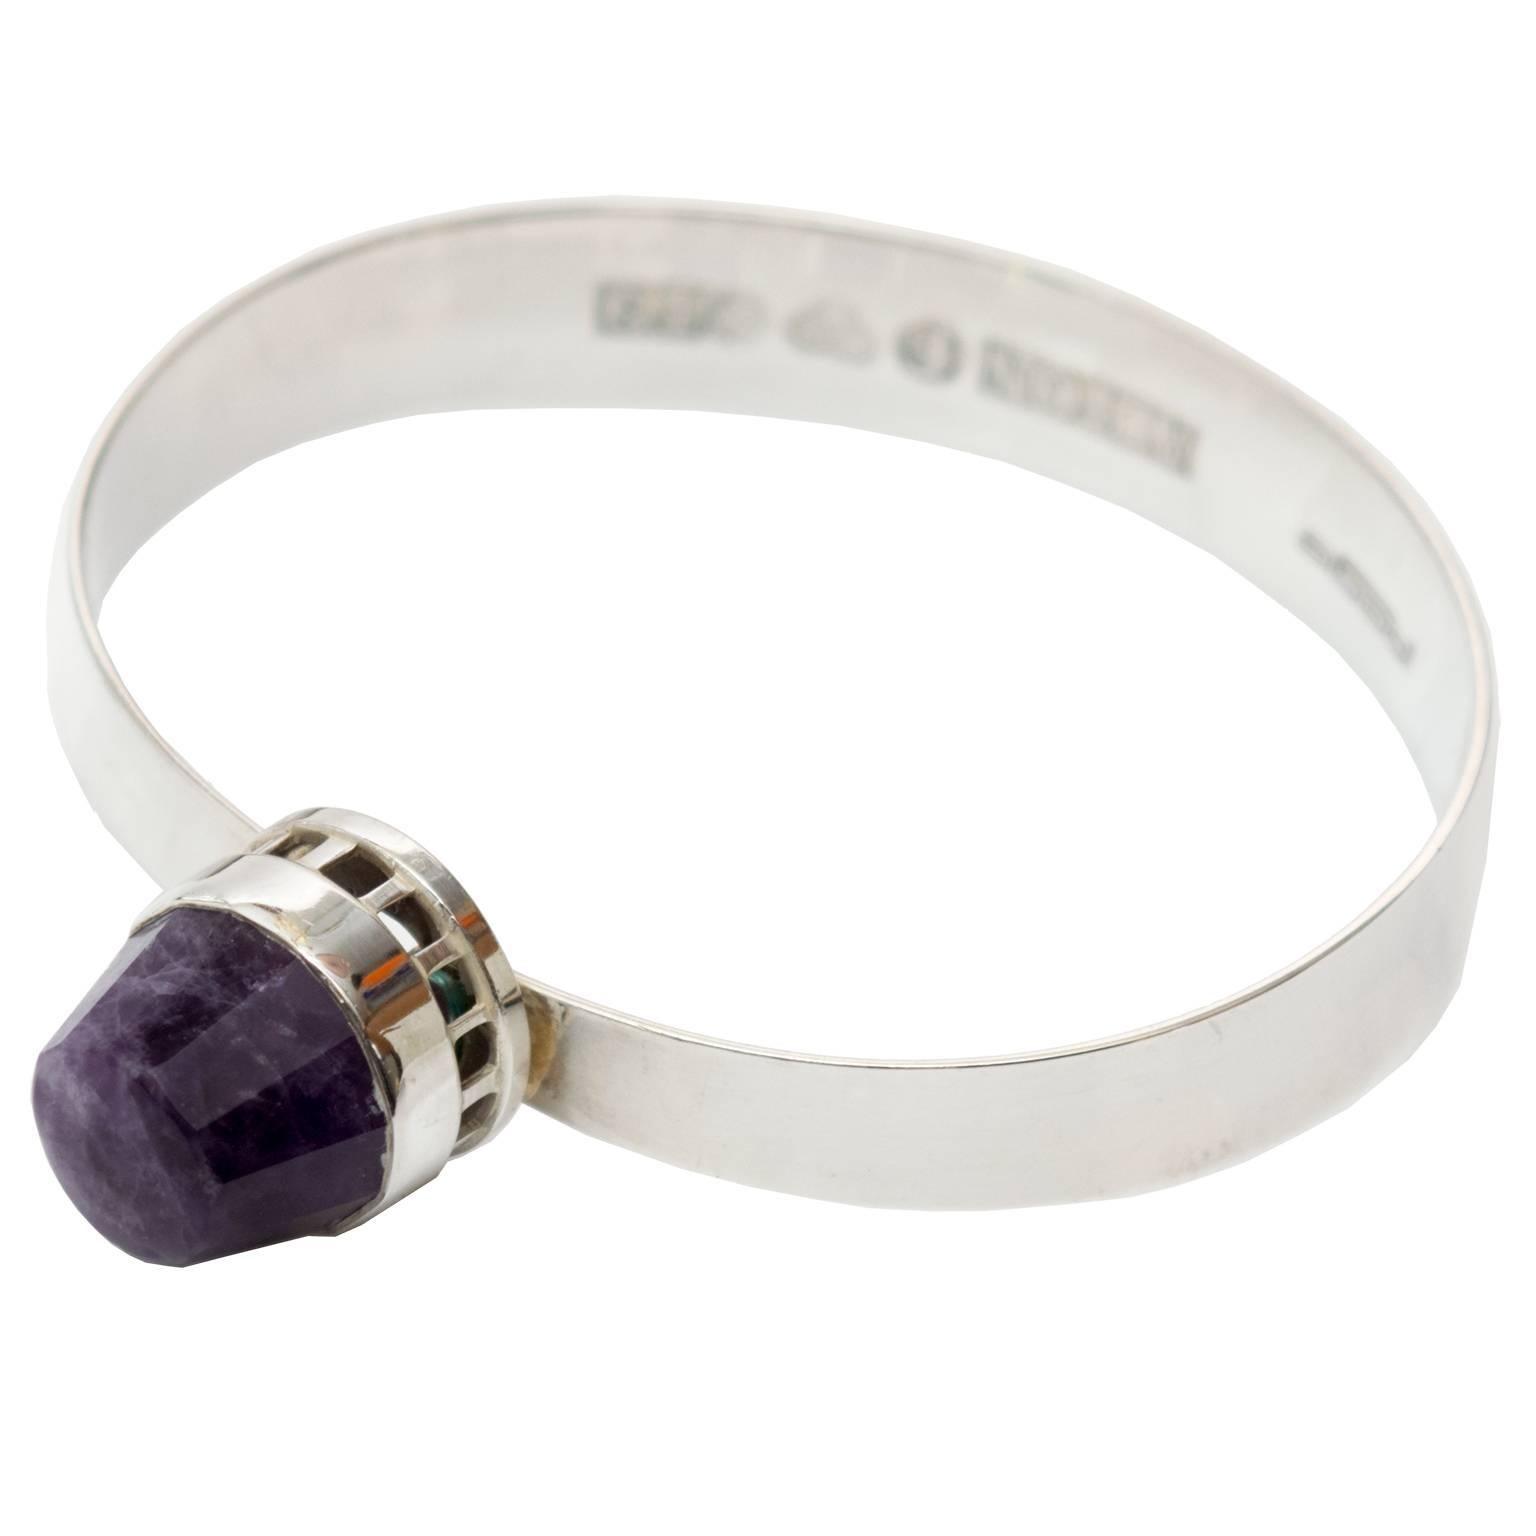 Scandinavian Modern, Pege, Alton Sterling Silver Bracelet with Purple Stone